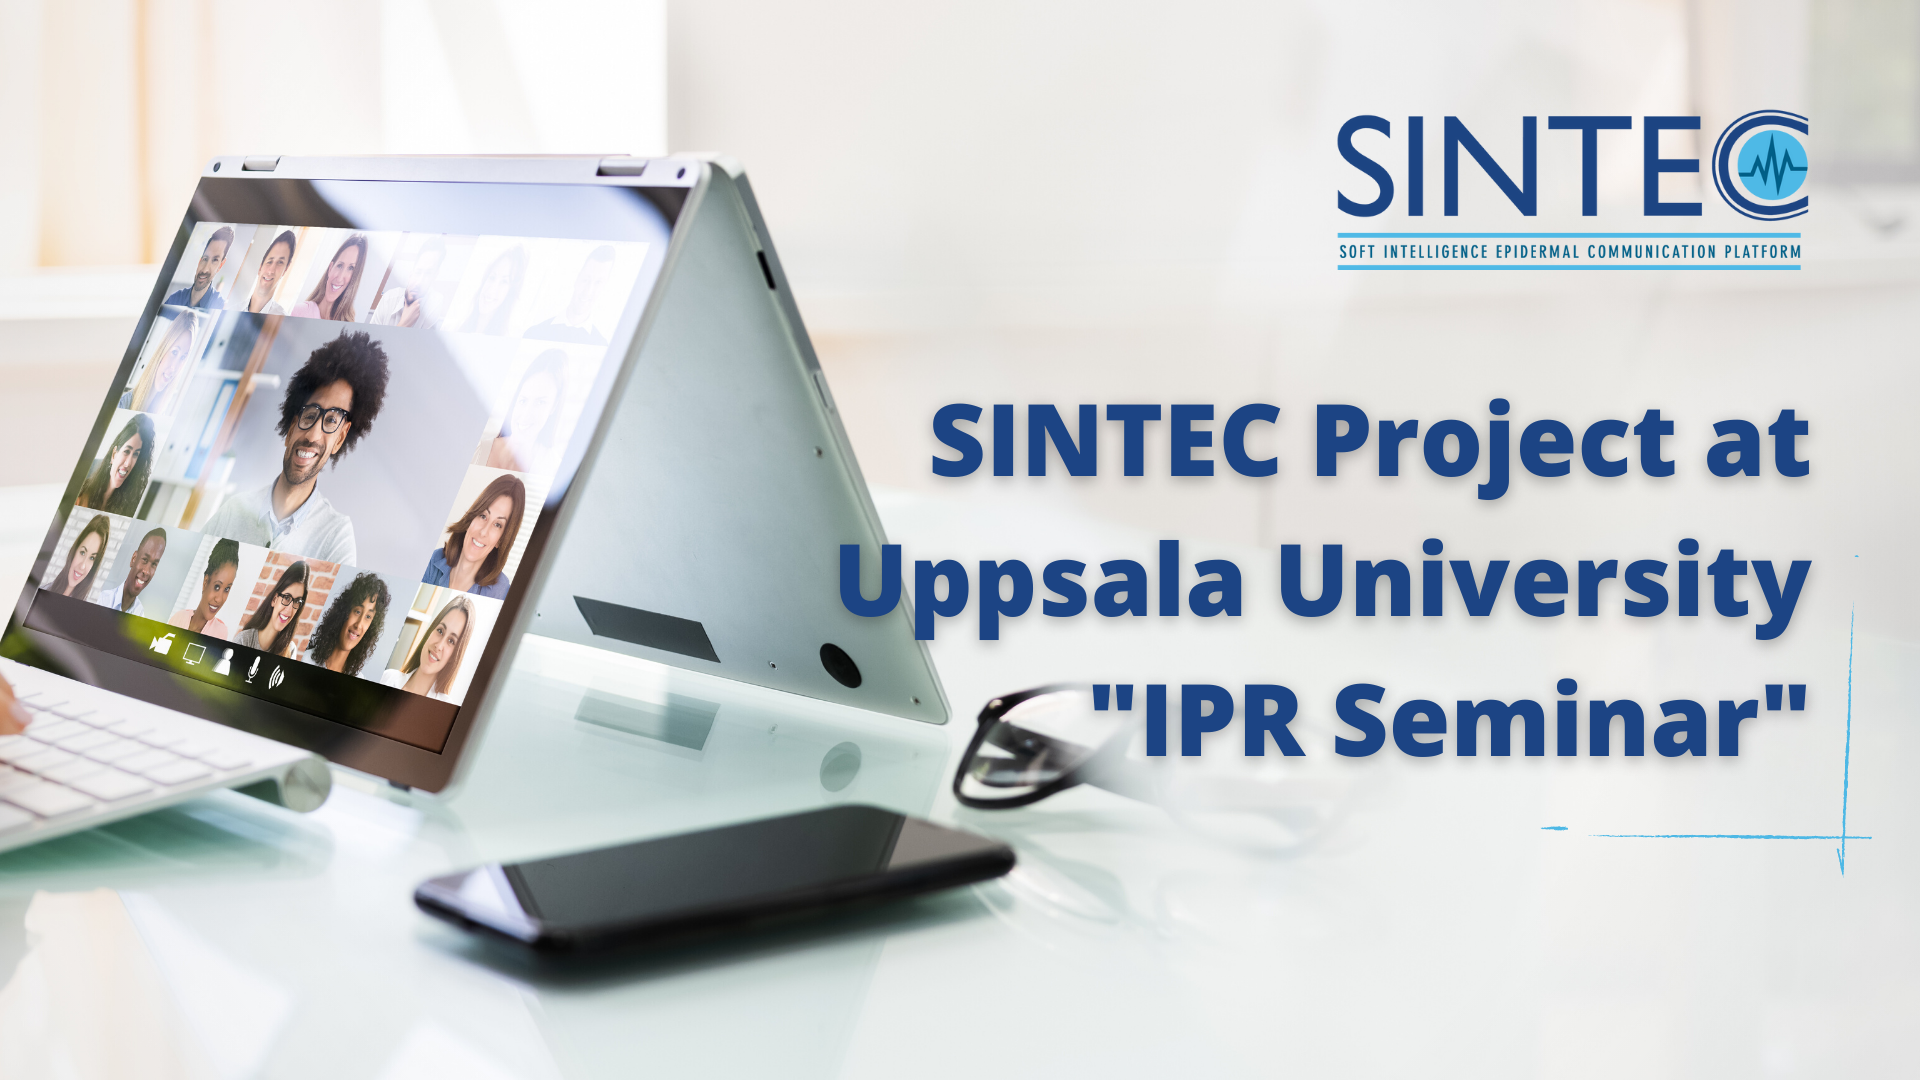 SINTEC at “IPR seminar” by Uppsala University